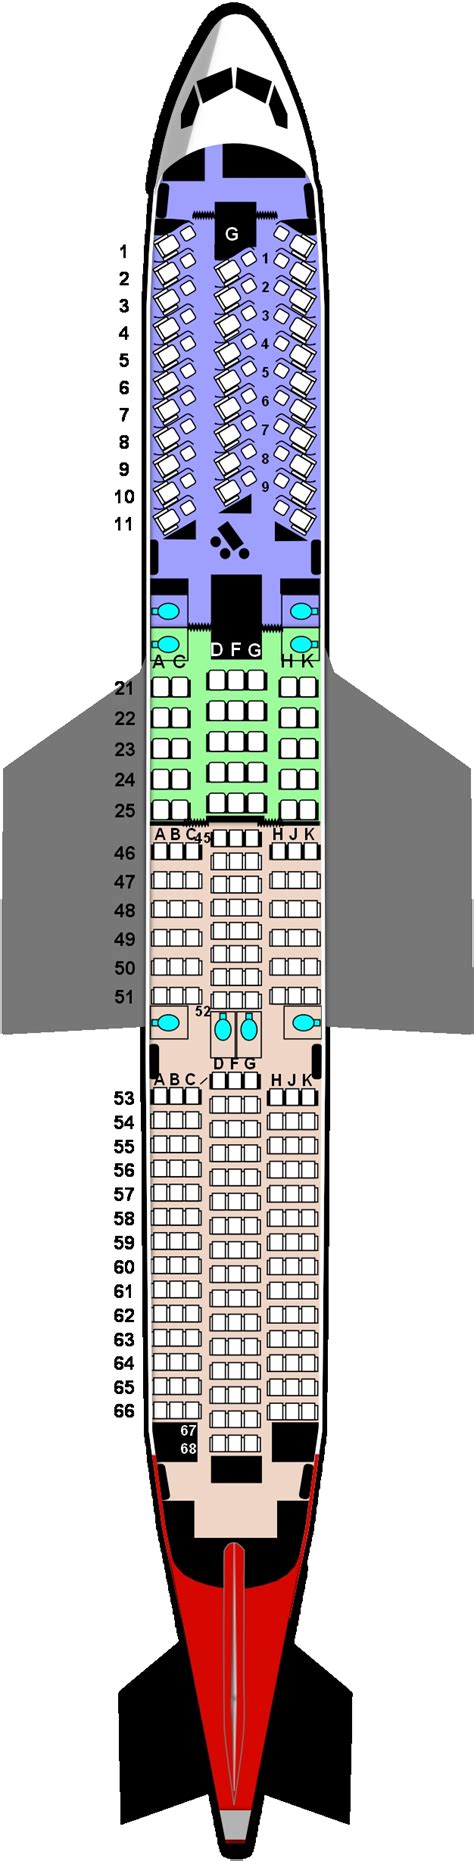 Seating Plan Boeing 787 9